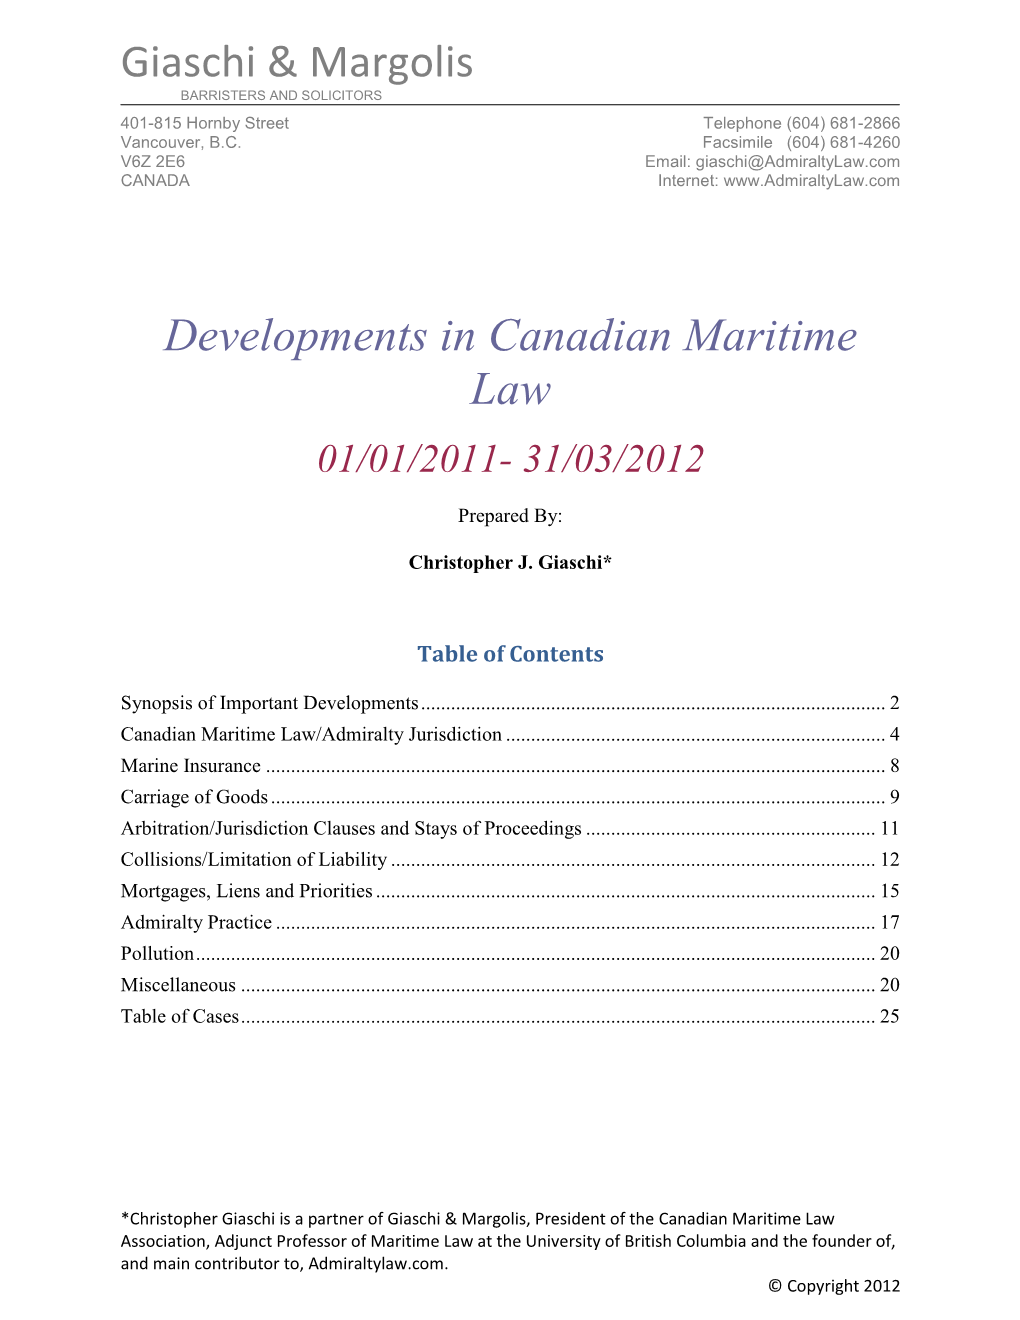 Giaschi & Margolis Developments in Canadian Maritime